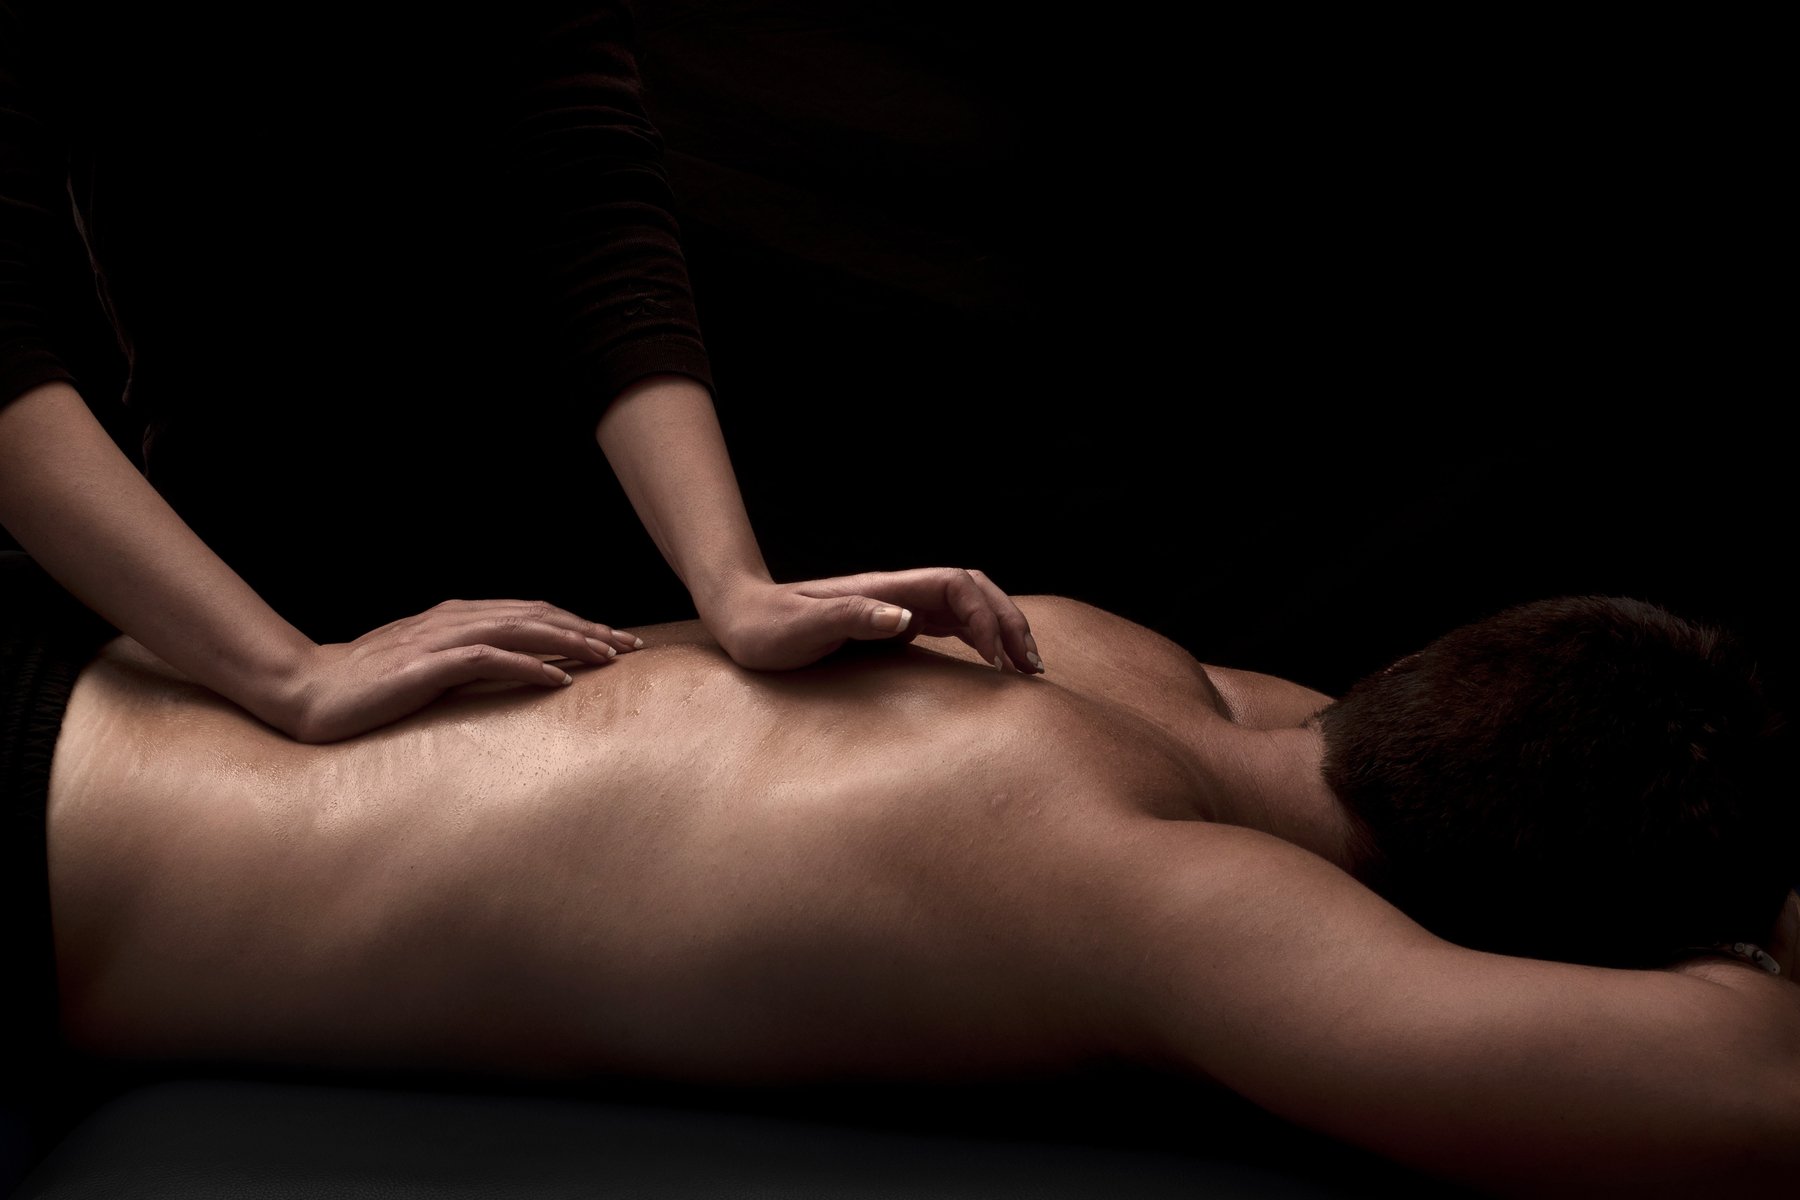 Erotic massage Santiago, Chile erotic massage